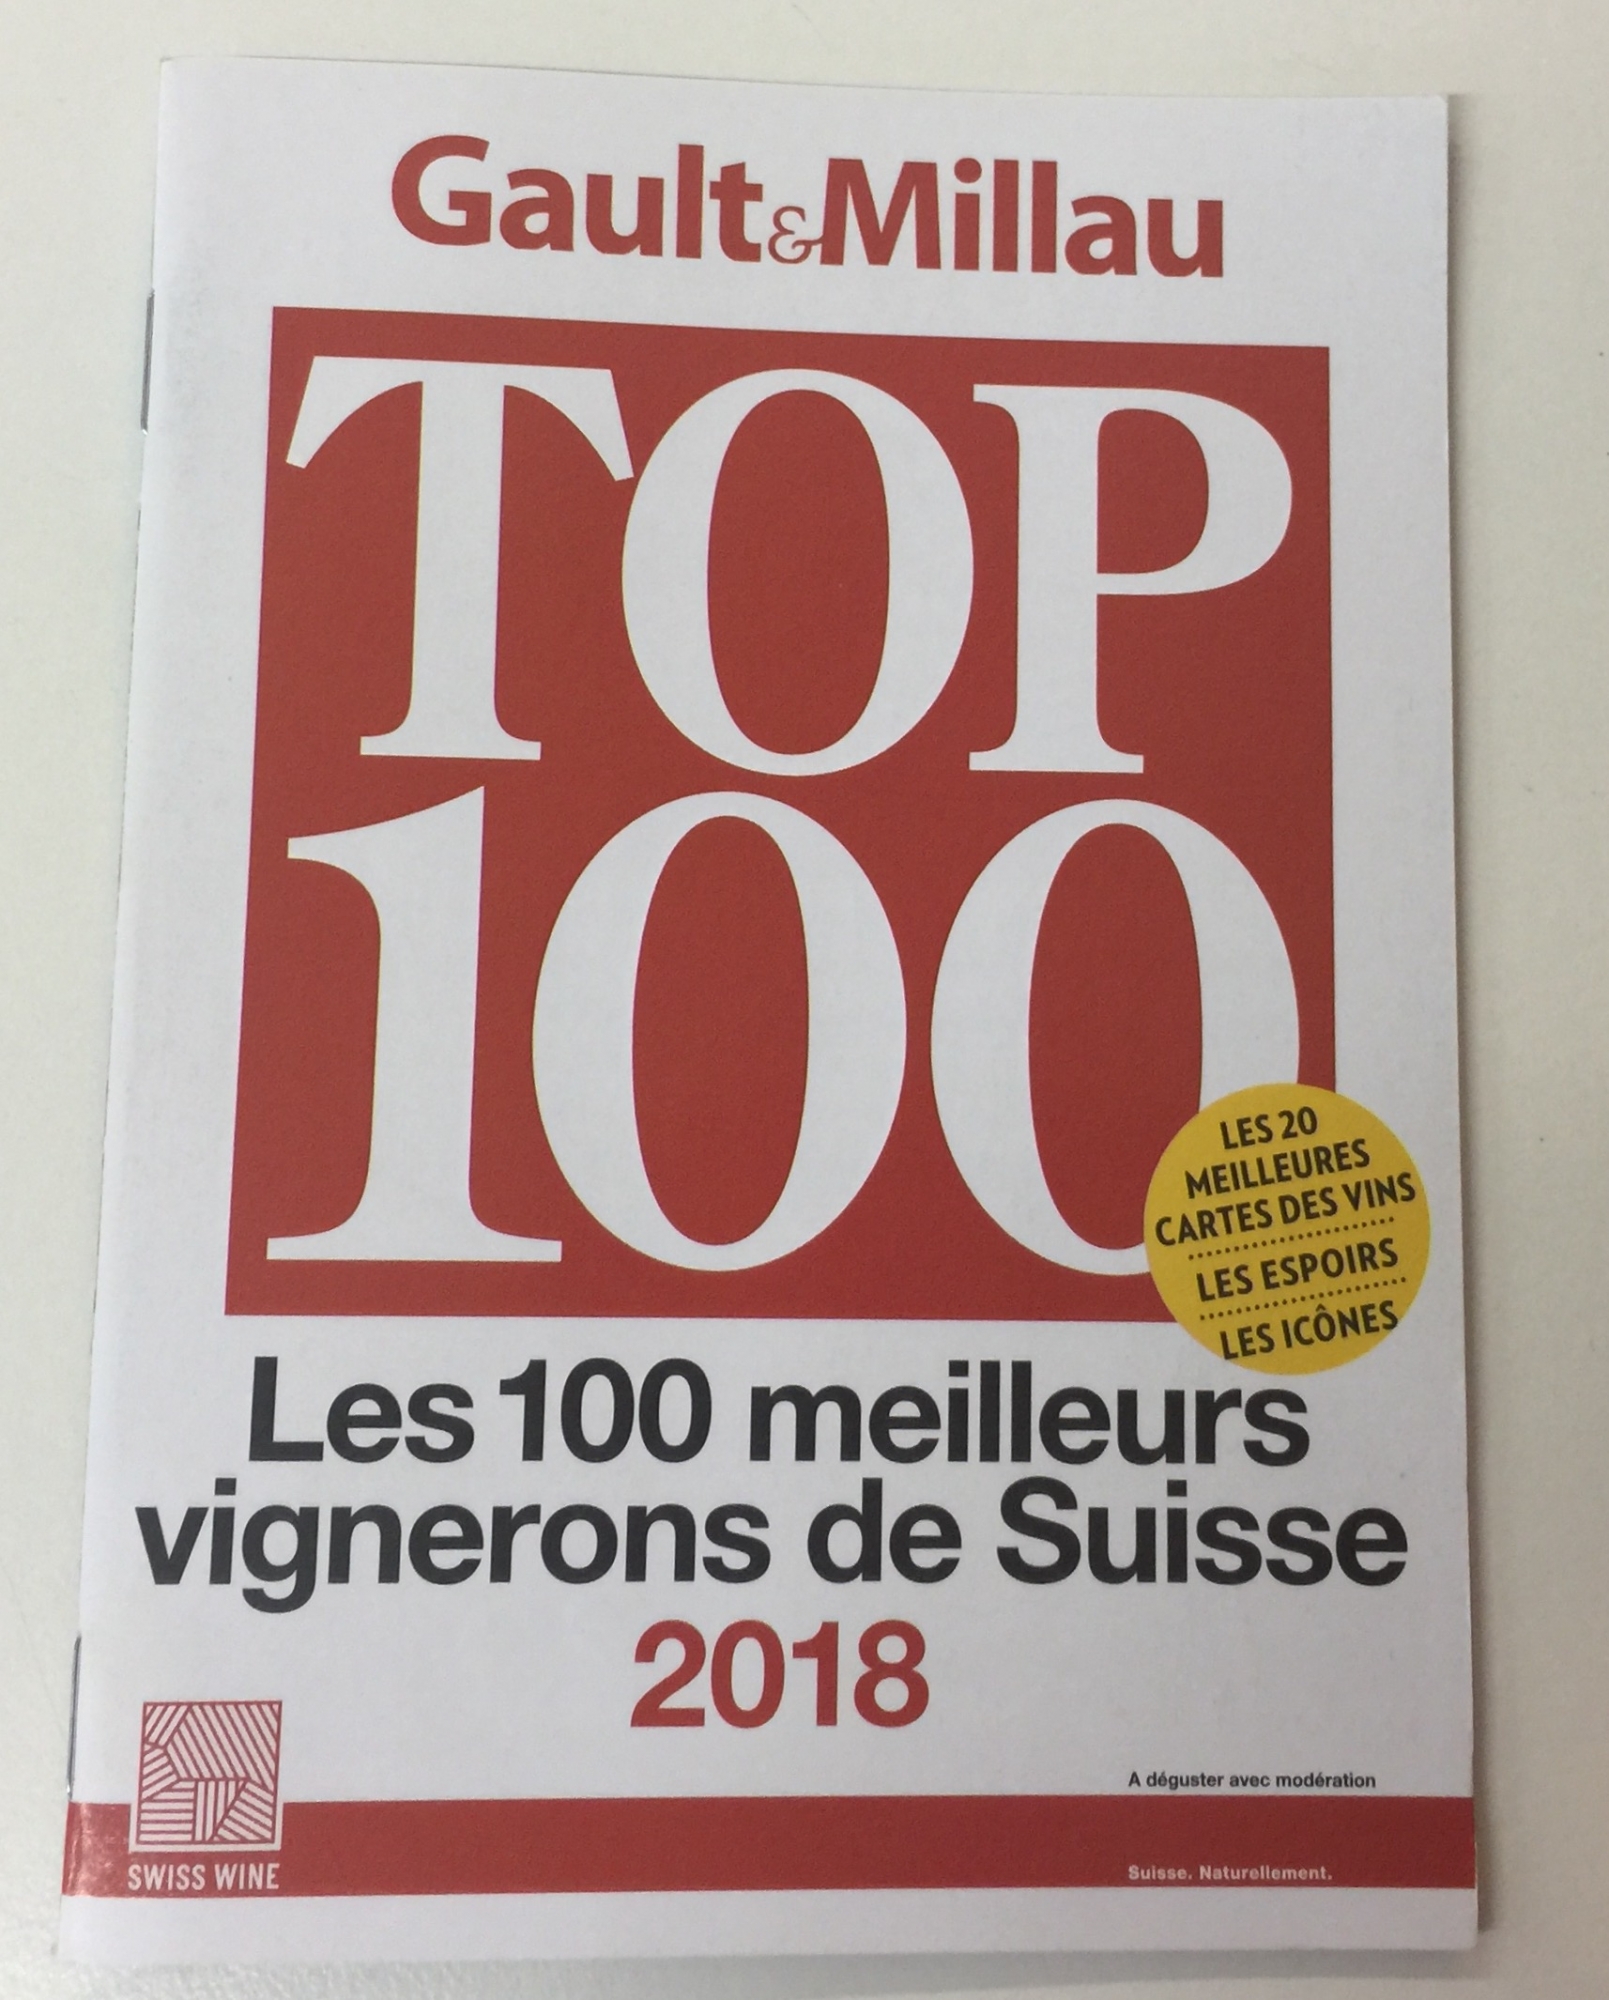 Le Top 100 des meilleurs vignerons de Suisse selon Gault et Millau a été dévoilé dans le cadre de VINEA.